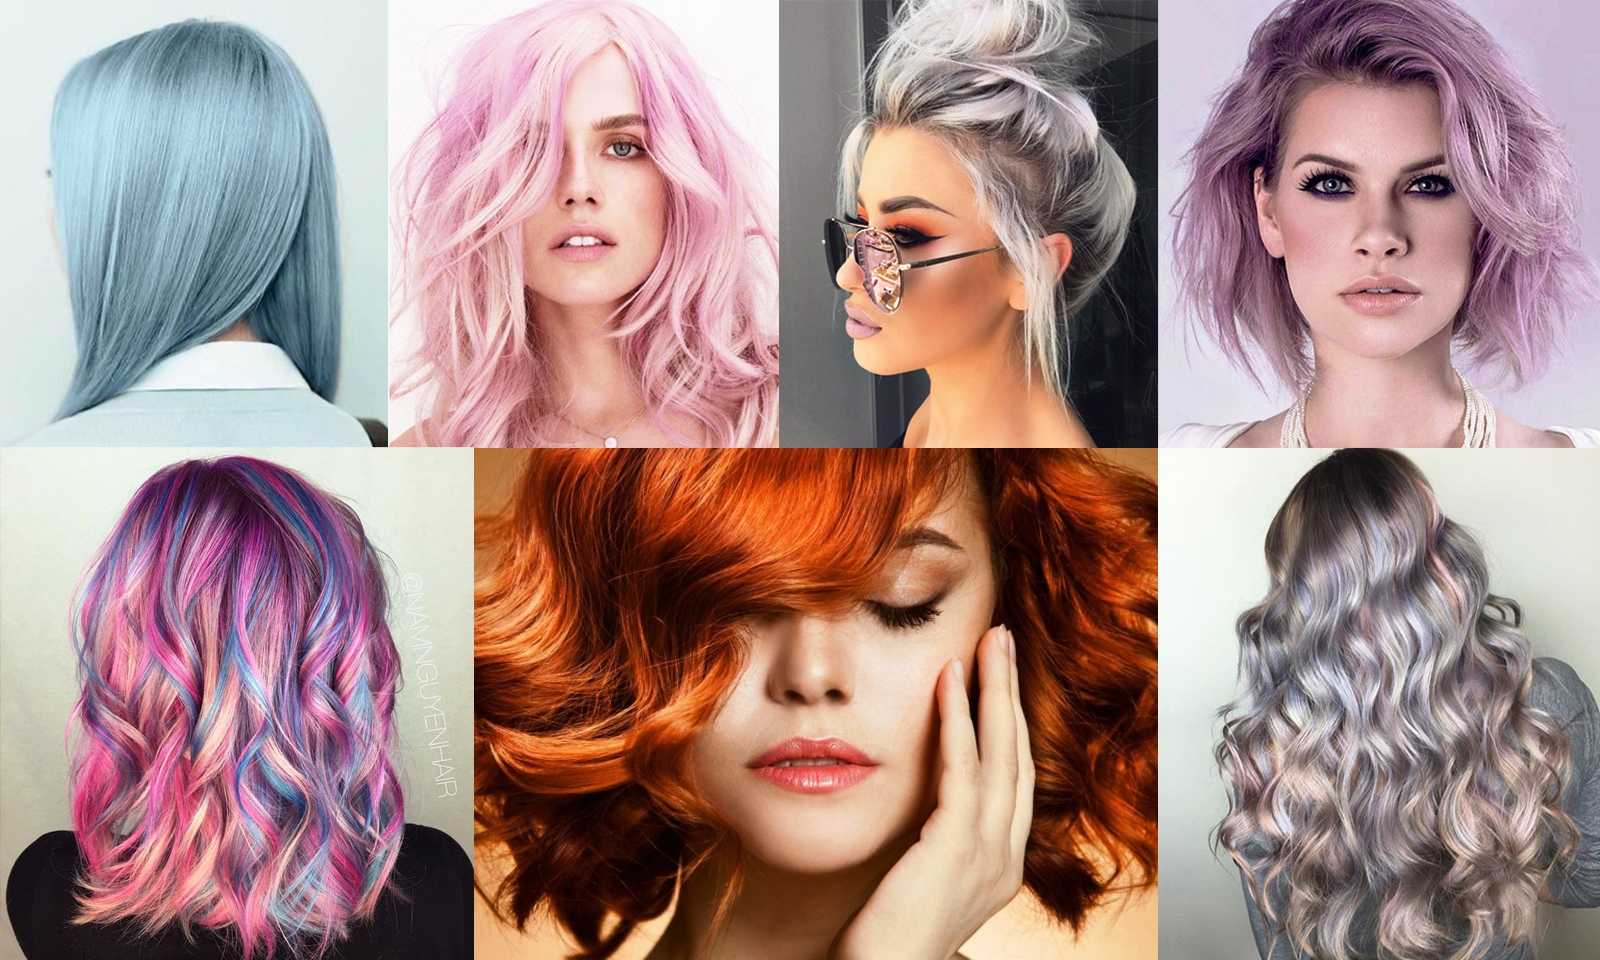 Модное окрашивание волос 2020-2021 года: тенденции, на средние, длинные и короткие, светлые, рыжие и темные волосы